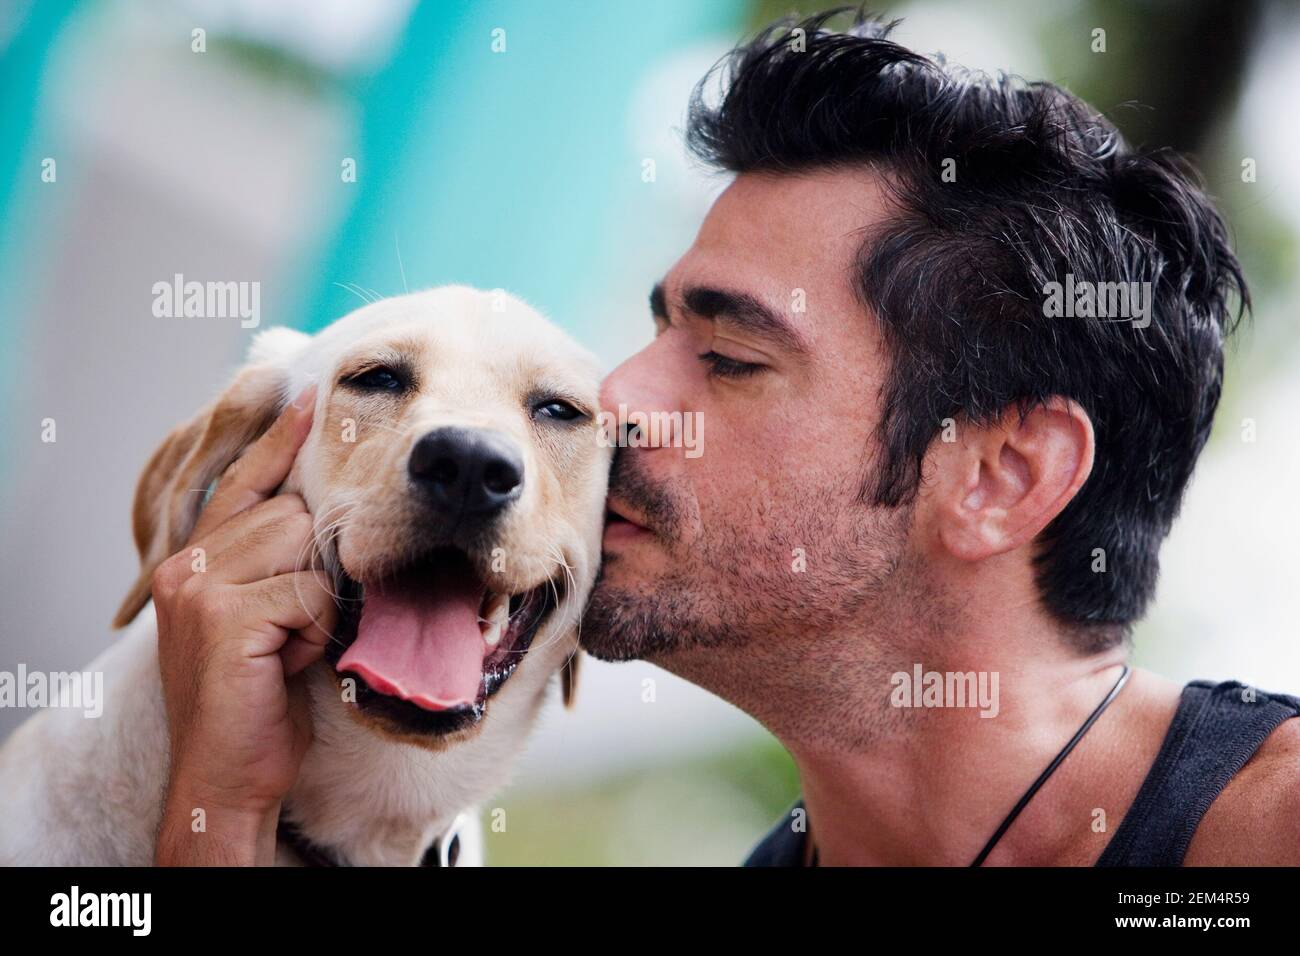 Nahaufnahme eines Mannes mit mittlerem Erwachsenen, der einen Hund küsst Stockfoto